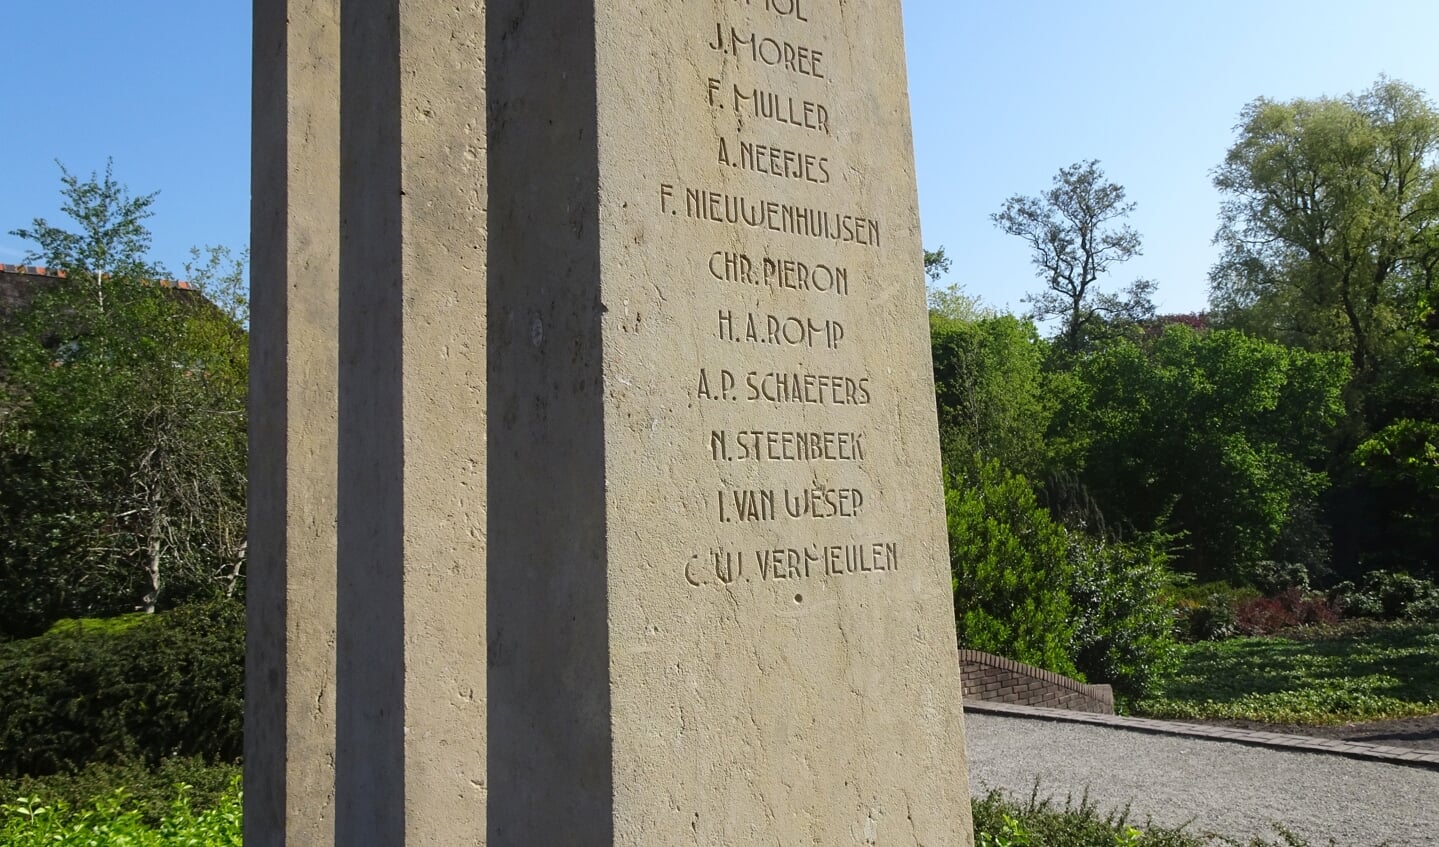 Pas in 1965 werd Kees toegevoegd op het monument: C.W. Vermeulen, de onderste naam.